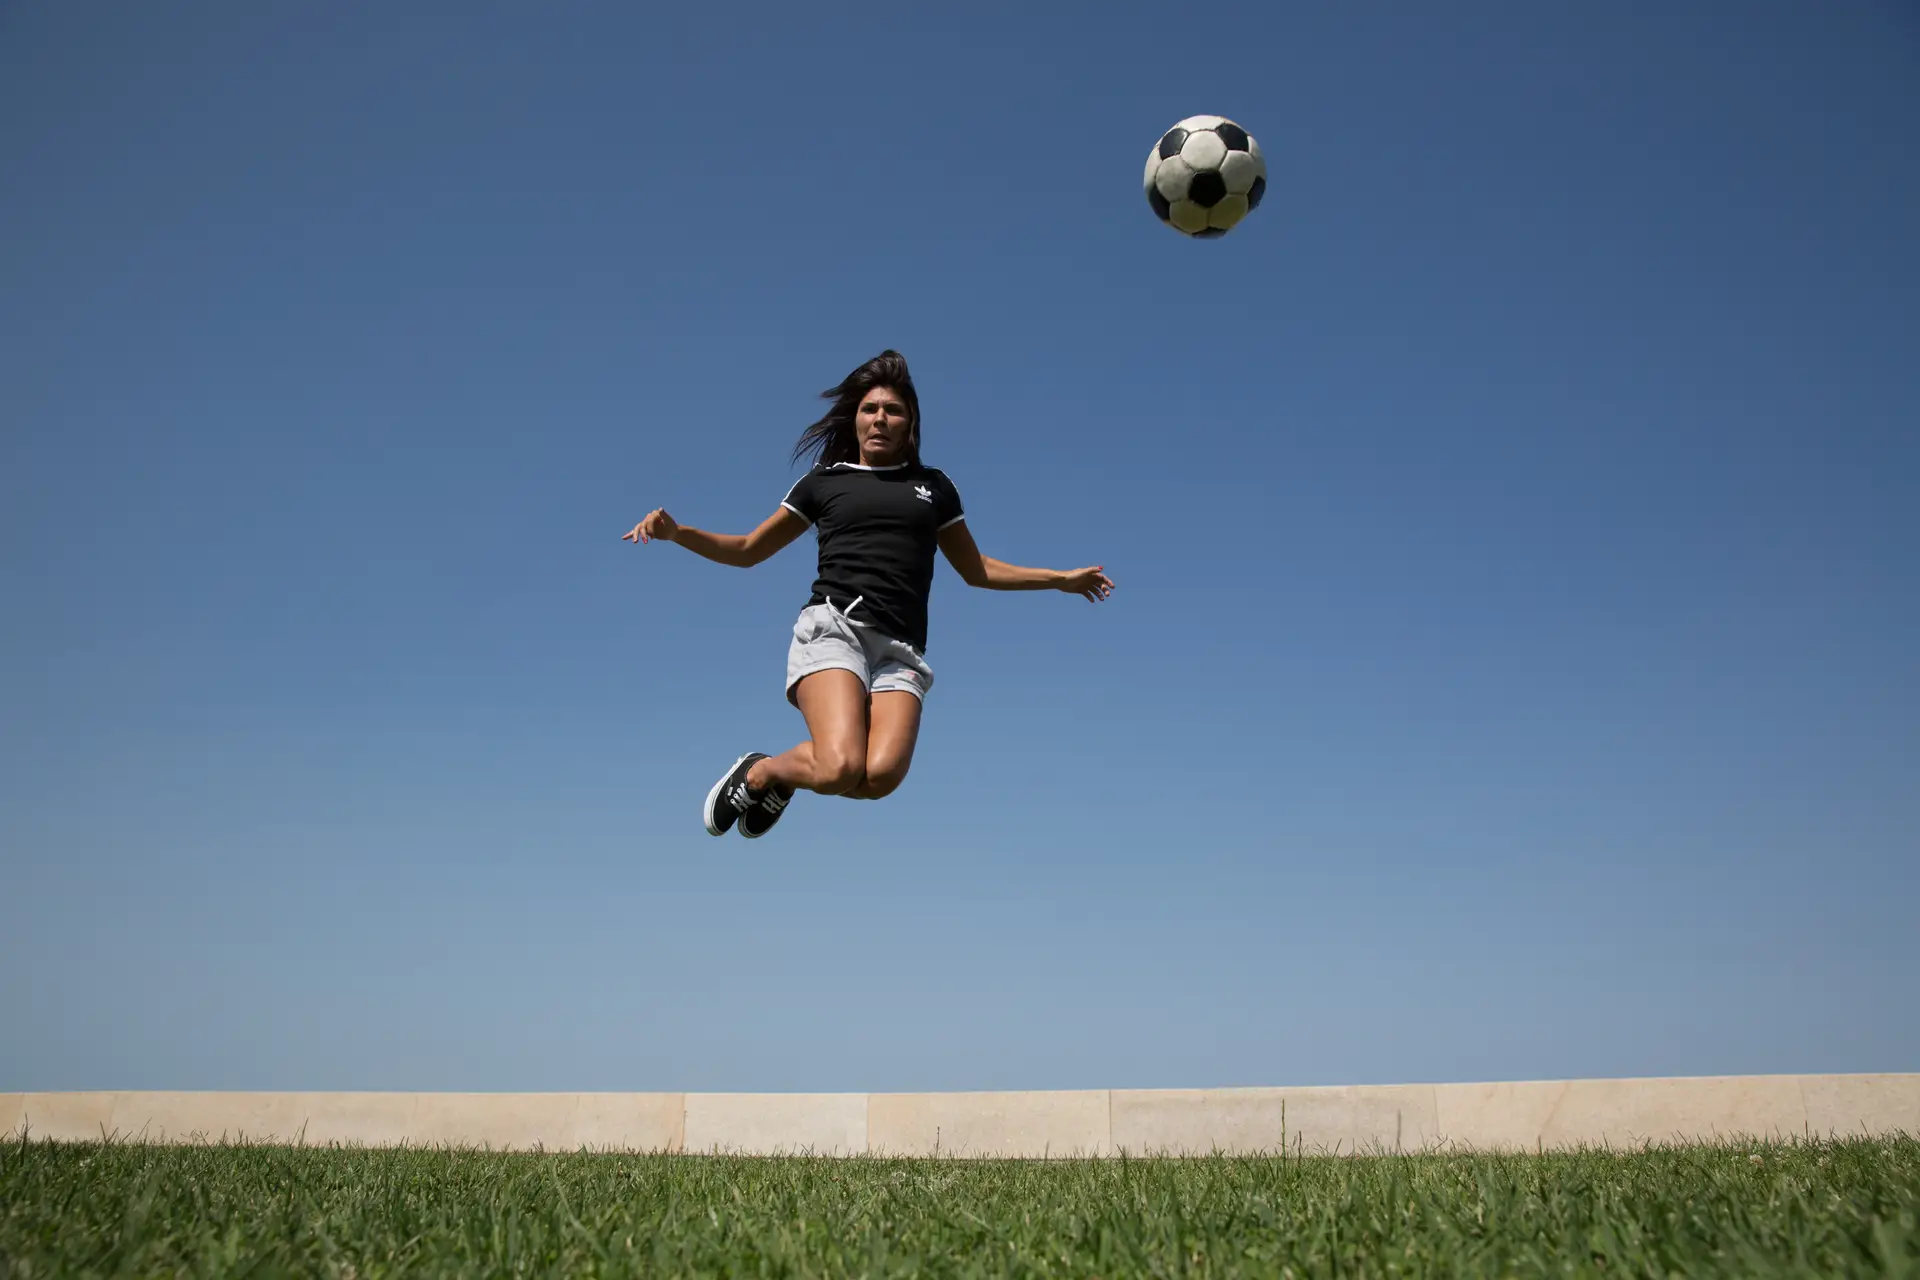 Menina também joga futebol - Livro de Cláudia Maria de Vasconcellos